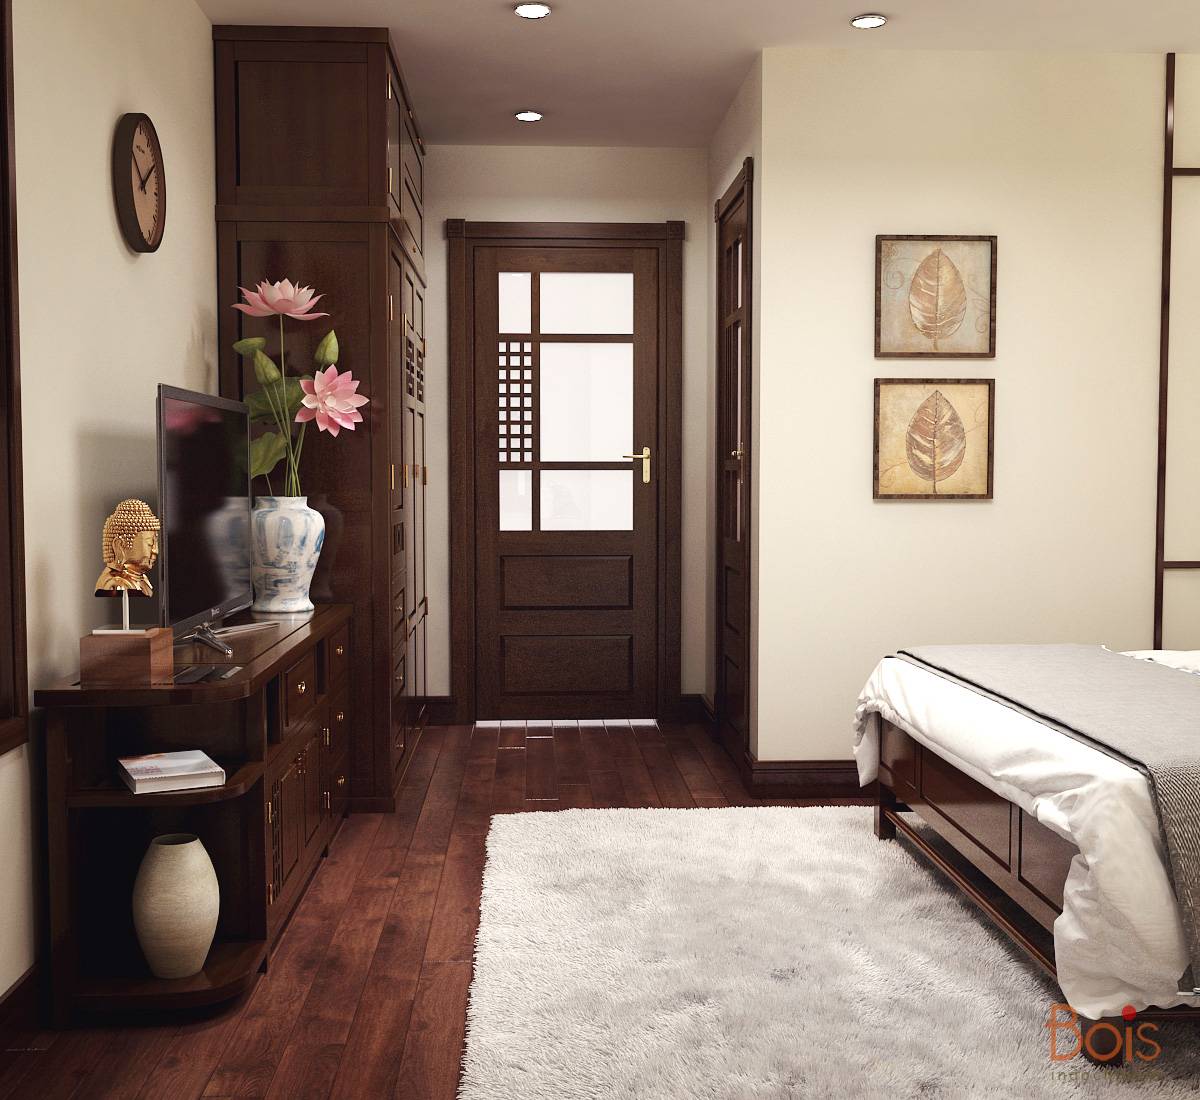 Nét an nhiên và tĩnh tại bên trong căn hộ chung cư có thiết kế nội thất hoàn toàn bằng gỗ tự nhiên